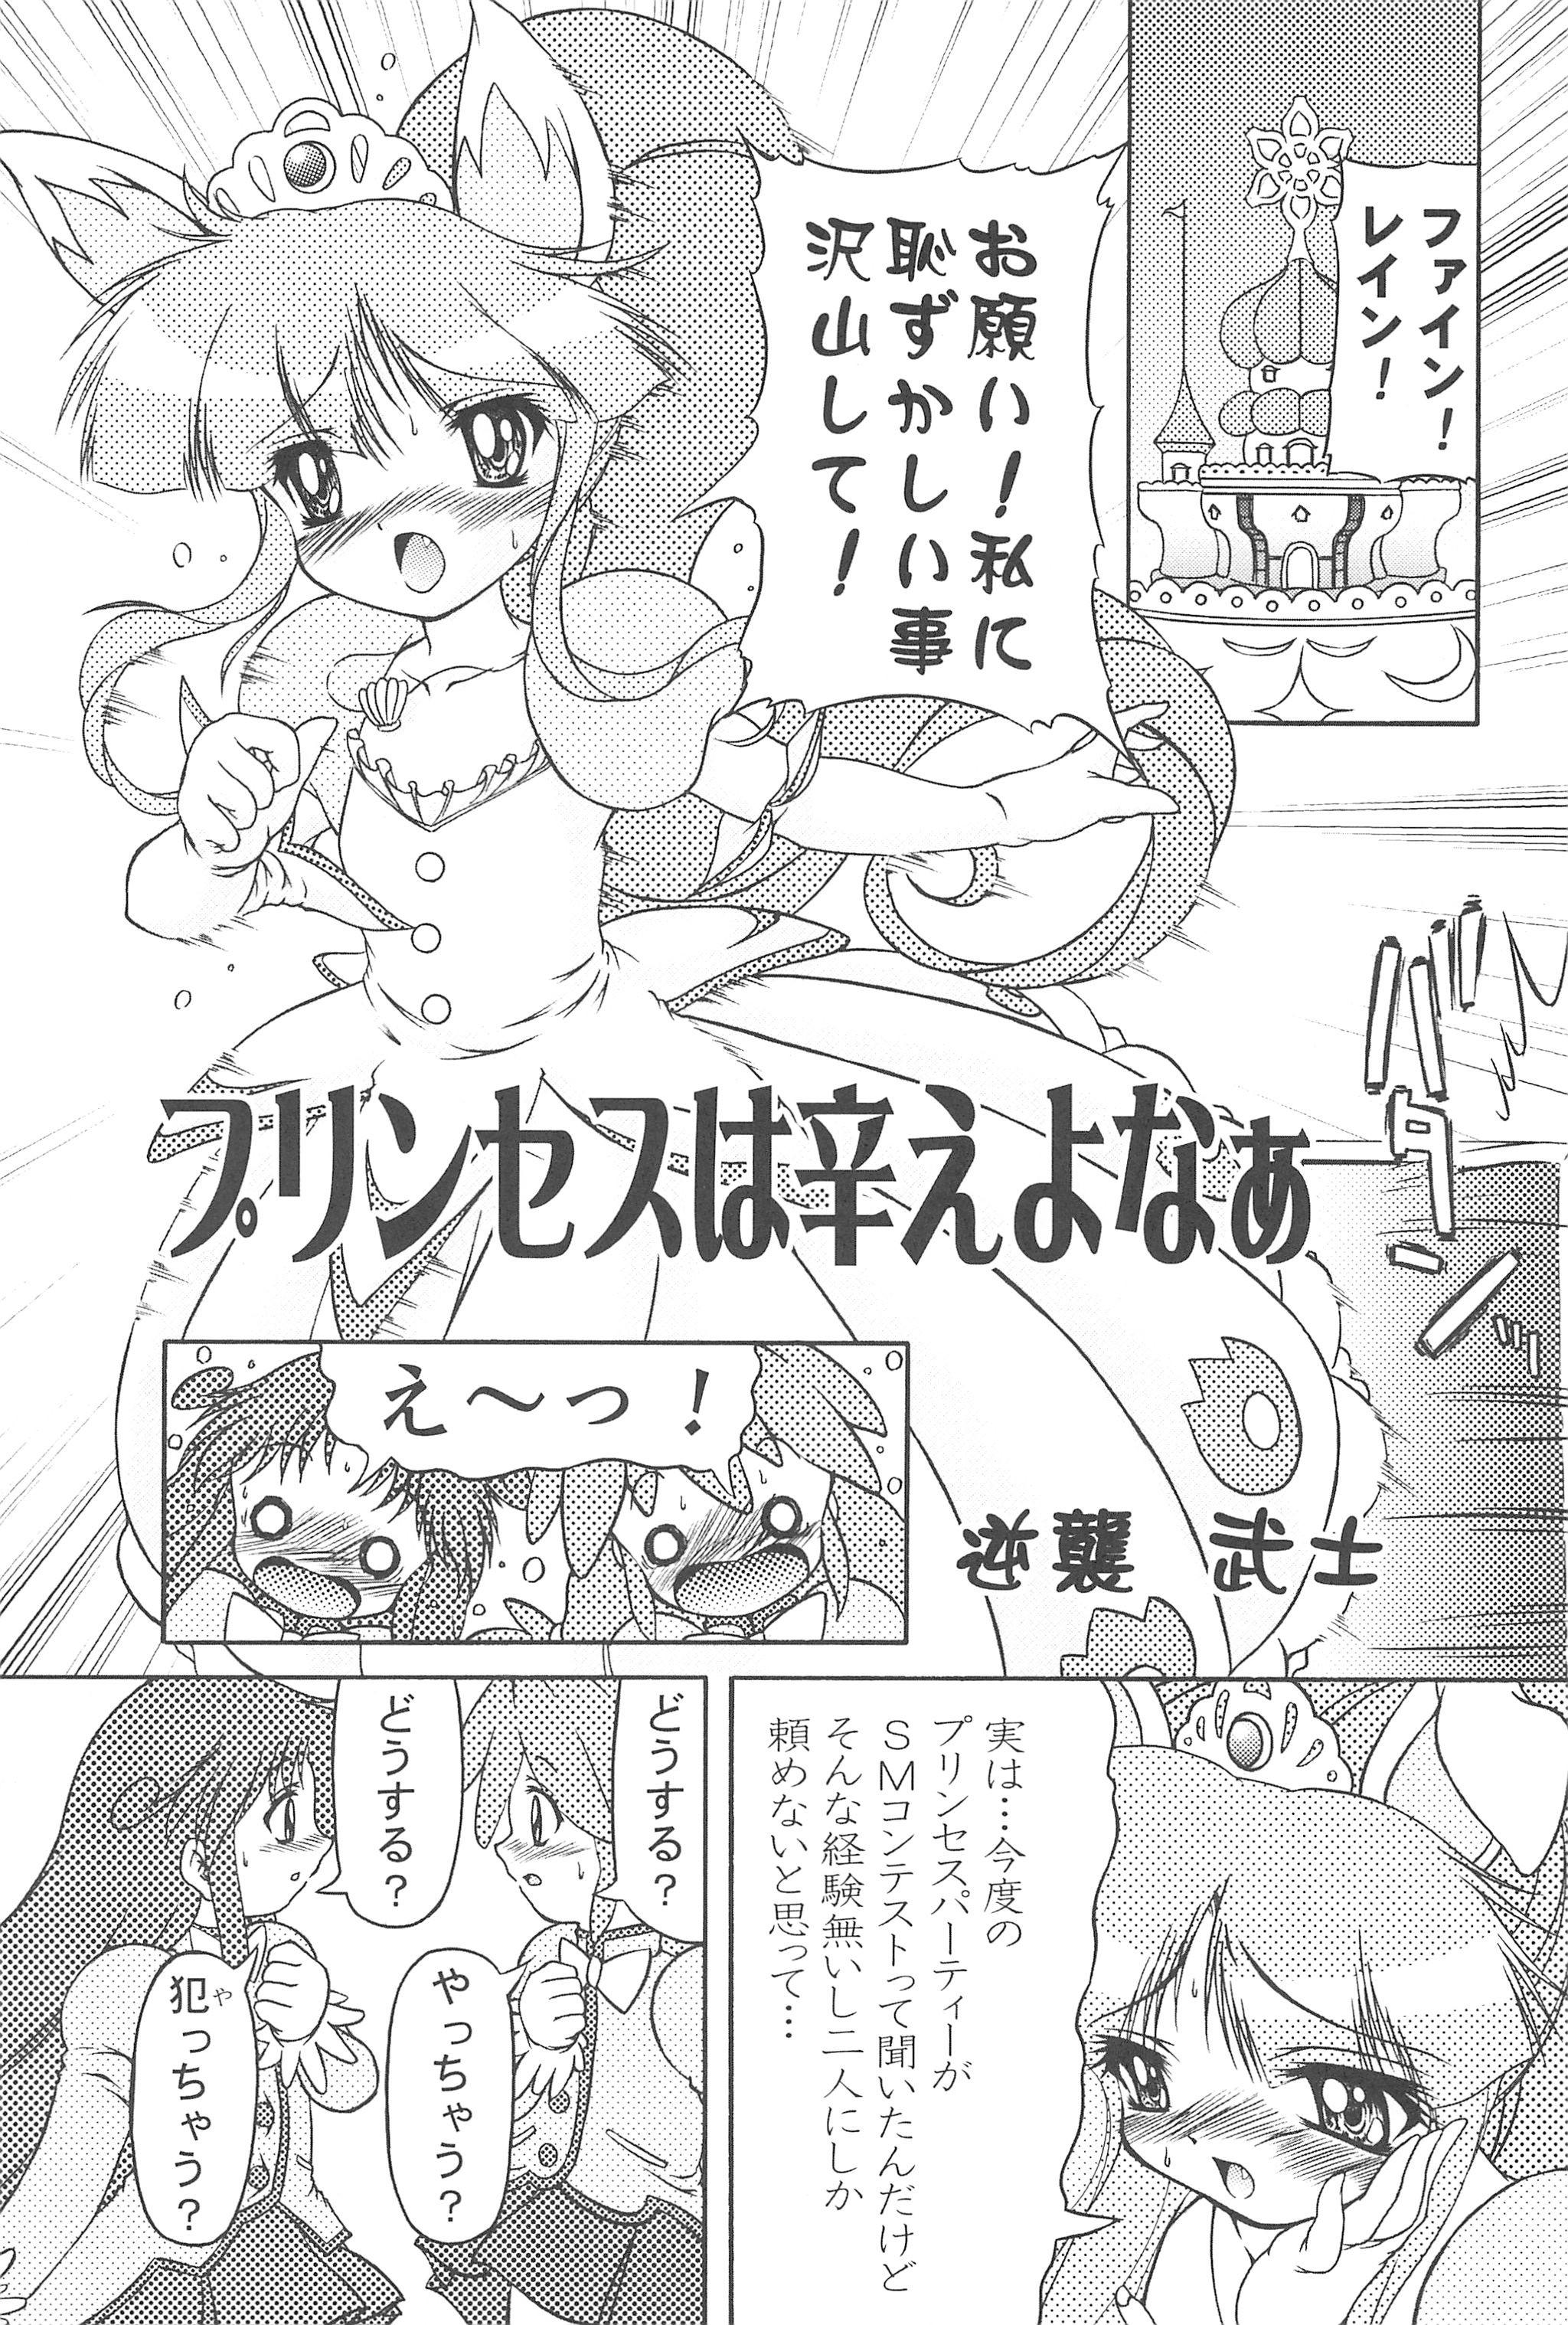 Naija Mijuku!! Hanjuku!! Lori Lori Mori!! 6 - Fushigiboshi no futagohime Web - Page 7